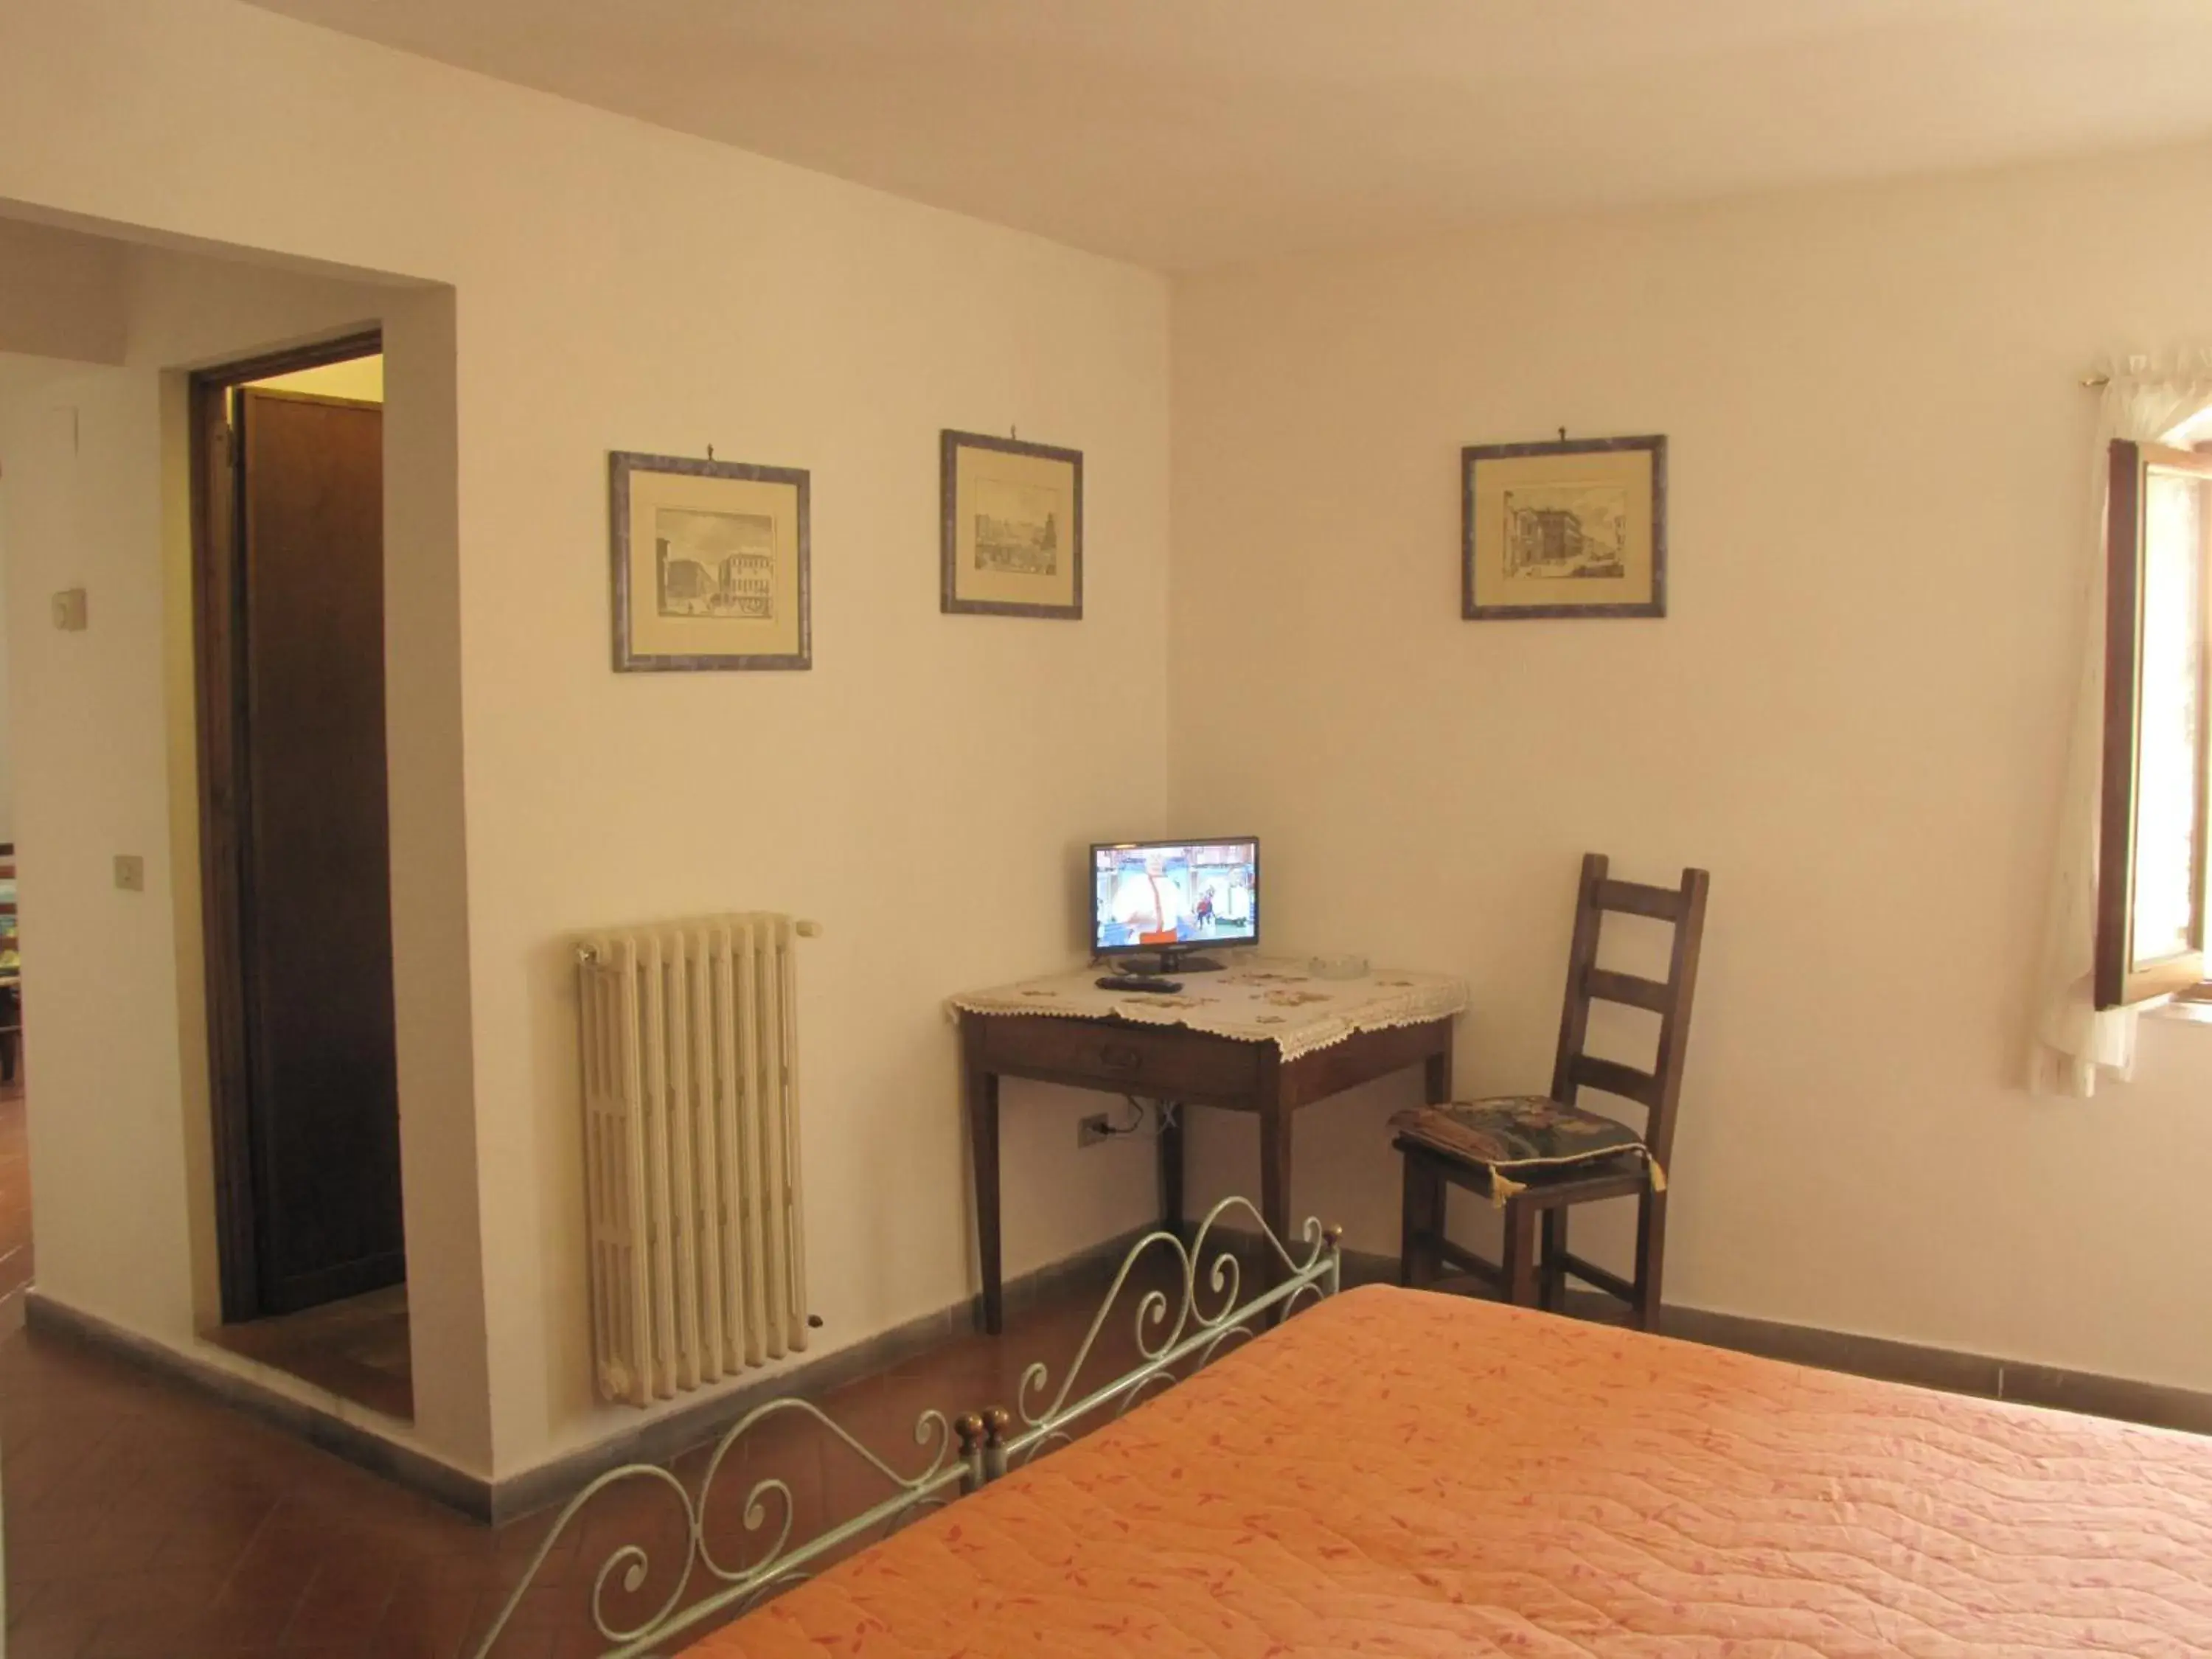 Bedroom, TV/Entertainment Center in Residence Casprini da Omero